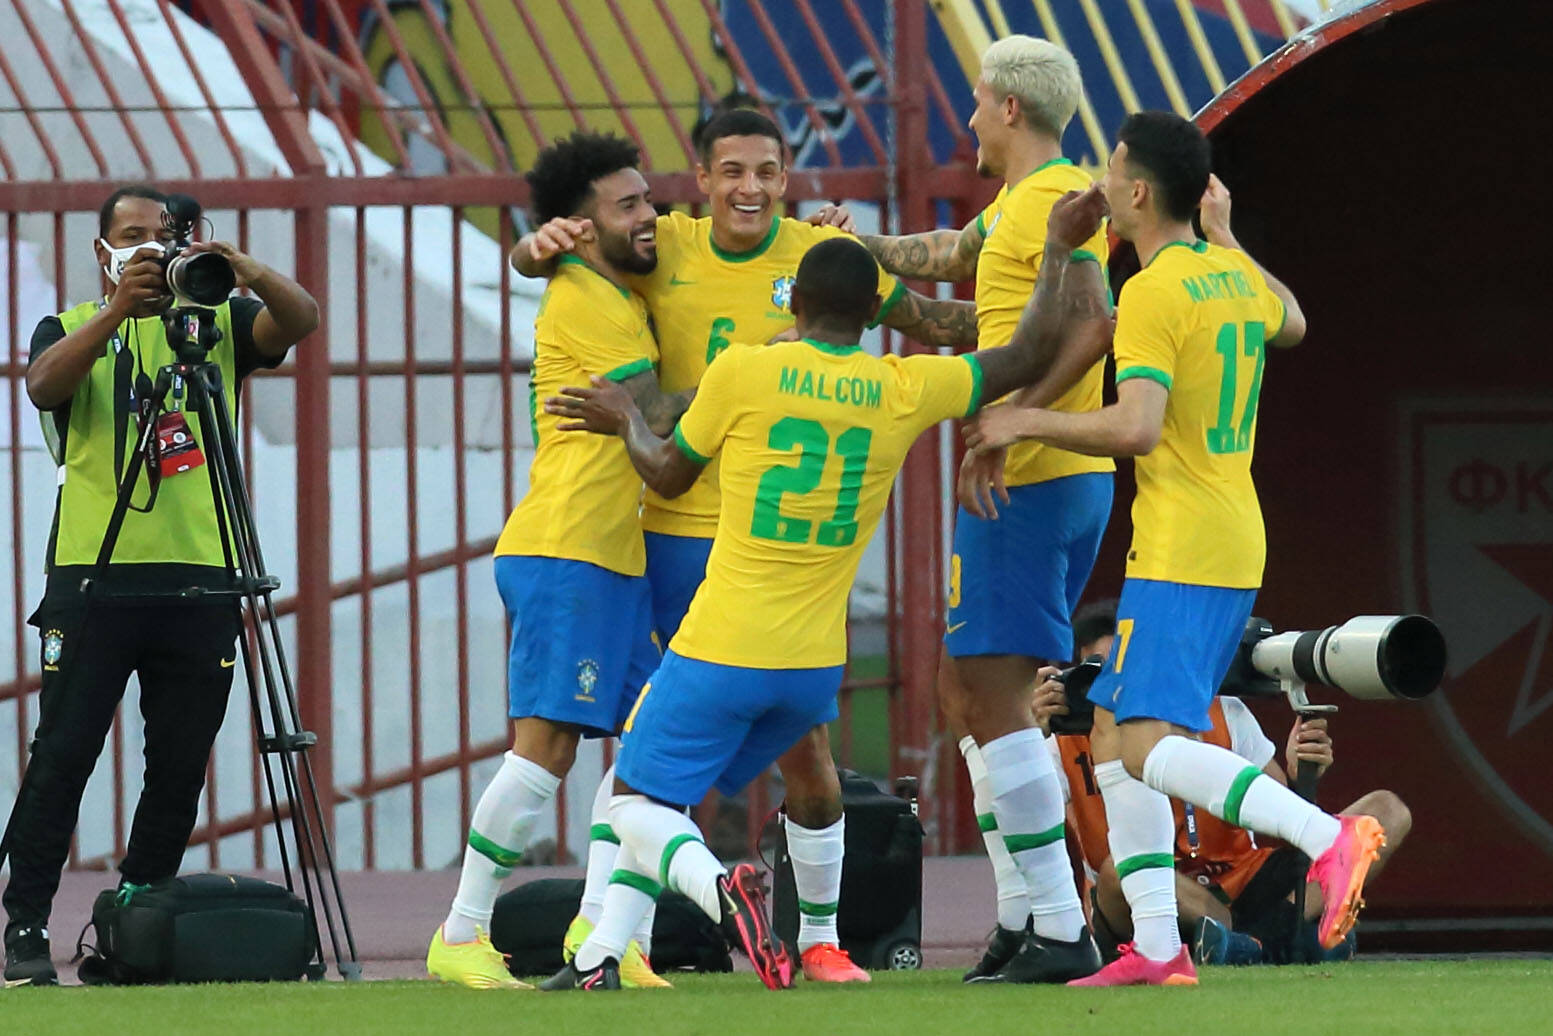 Die Brasilianer Claudinho (l.) und Malcom reisen von der Nationalmannschaft ab, ihnen droht eine Sperre